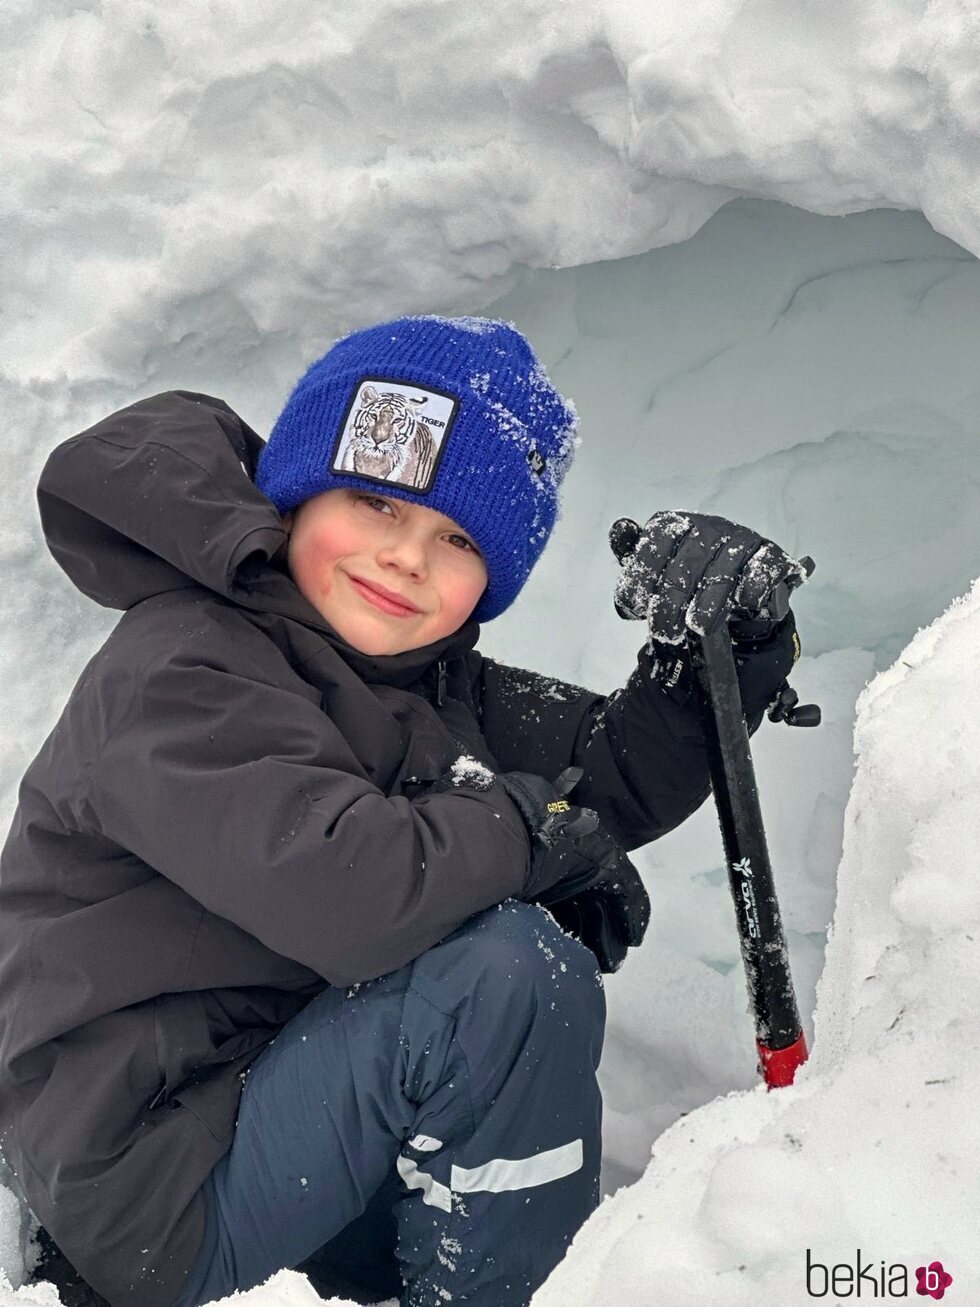 Oscar de Suecia en la nieve en su 8 cumpleaños